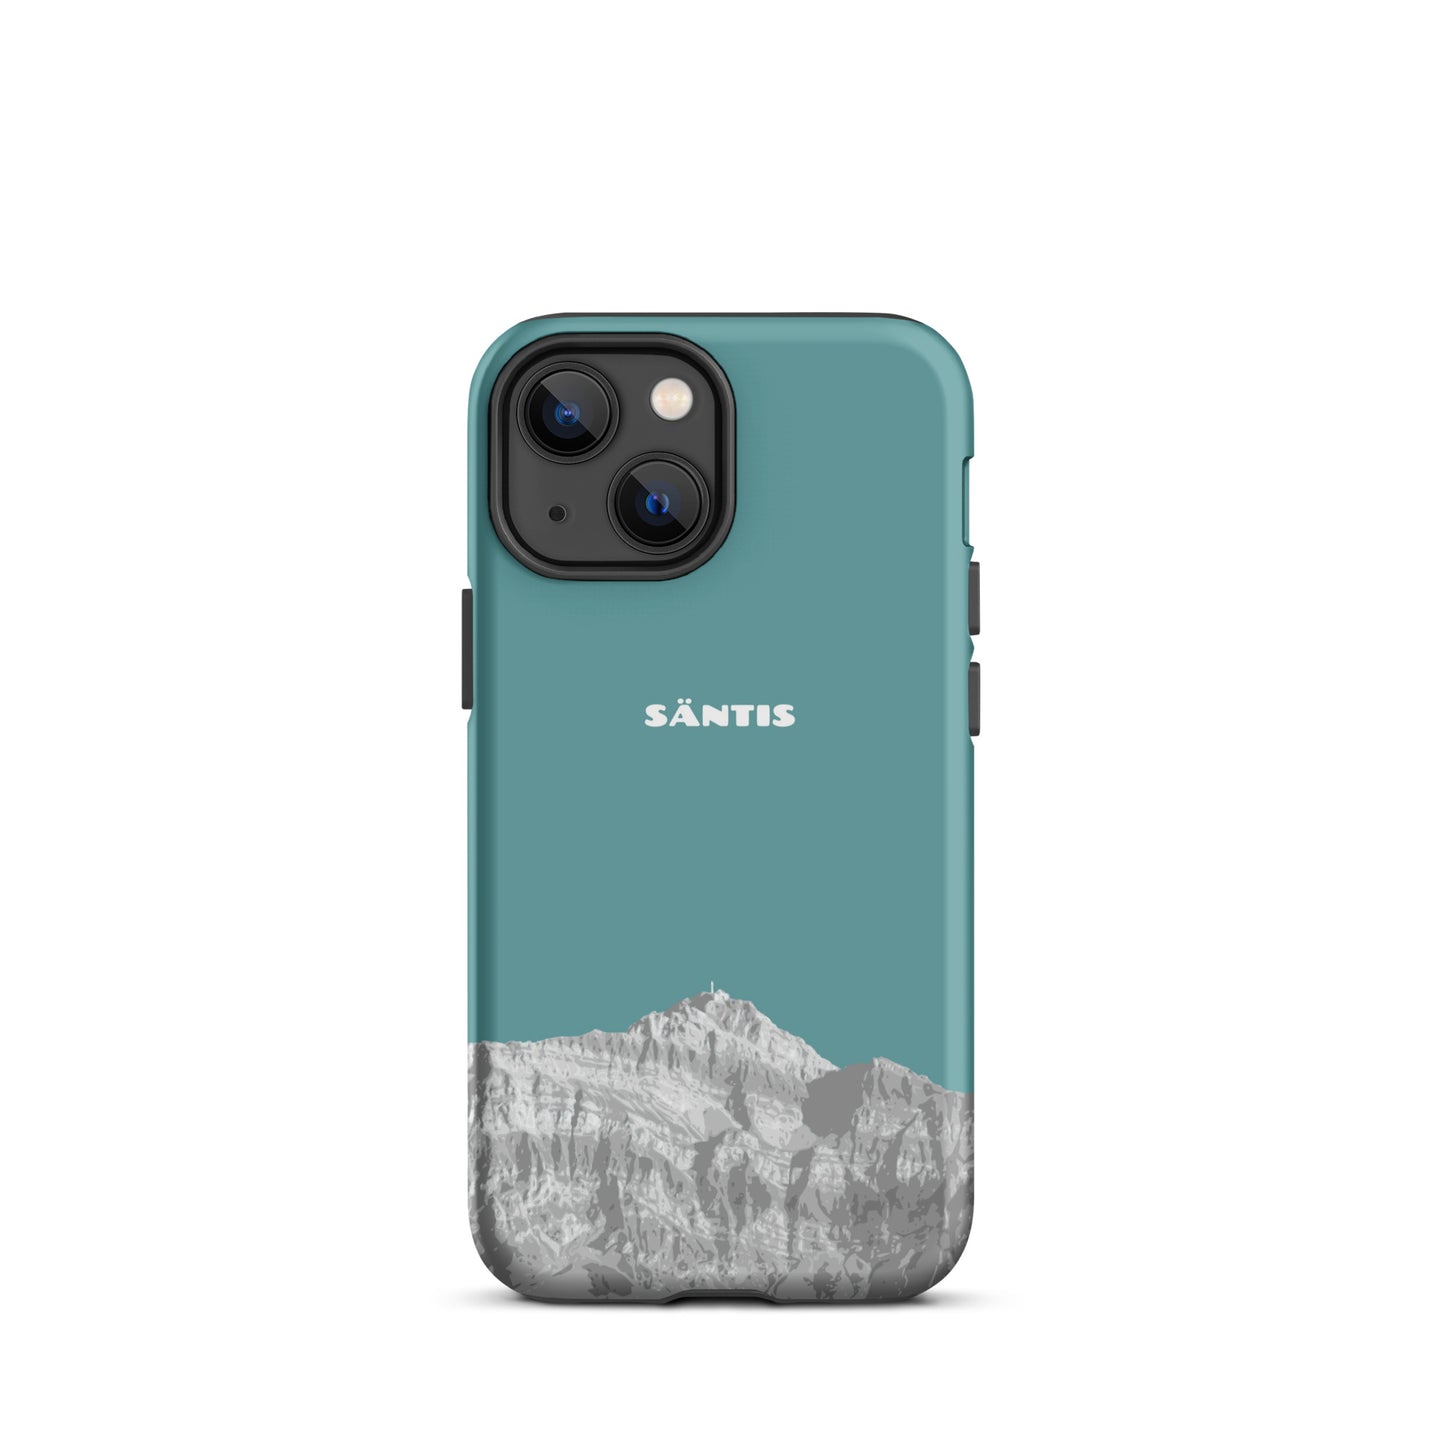 Hülle für das iPhone 13 Mini von Apple in der Farbe Kadettenblau, dass den Säntis im Alpstein zeigt.